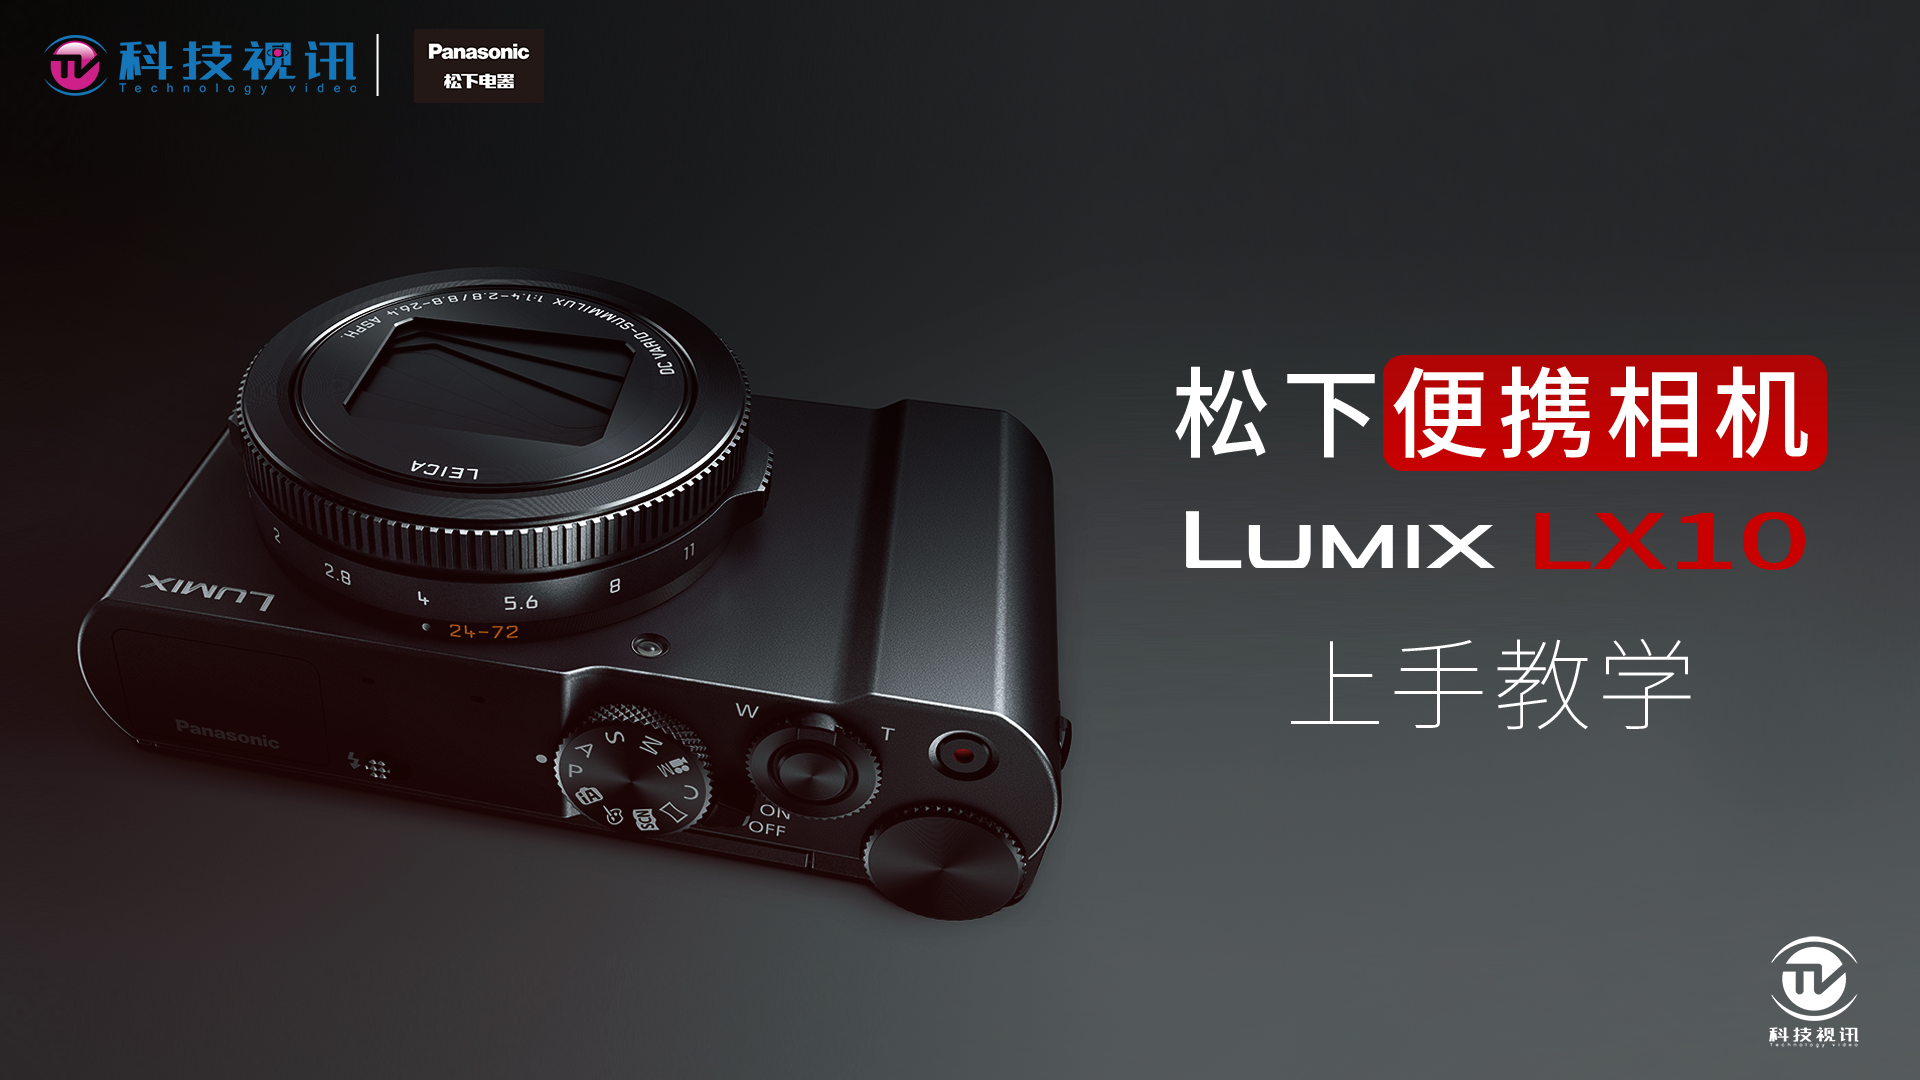 松下便携相机 lumix lx10上手教学